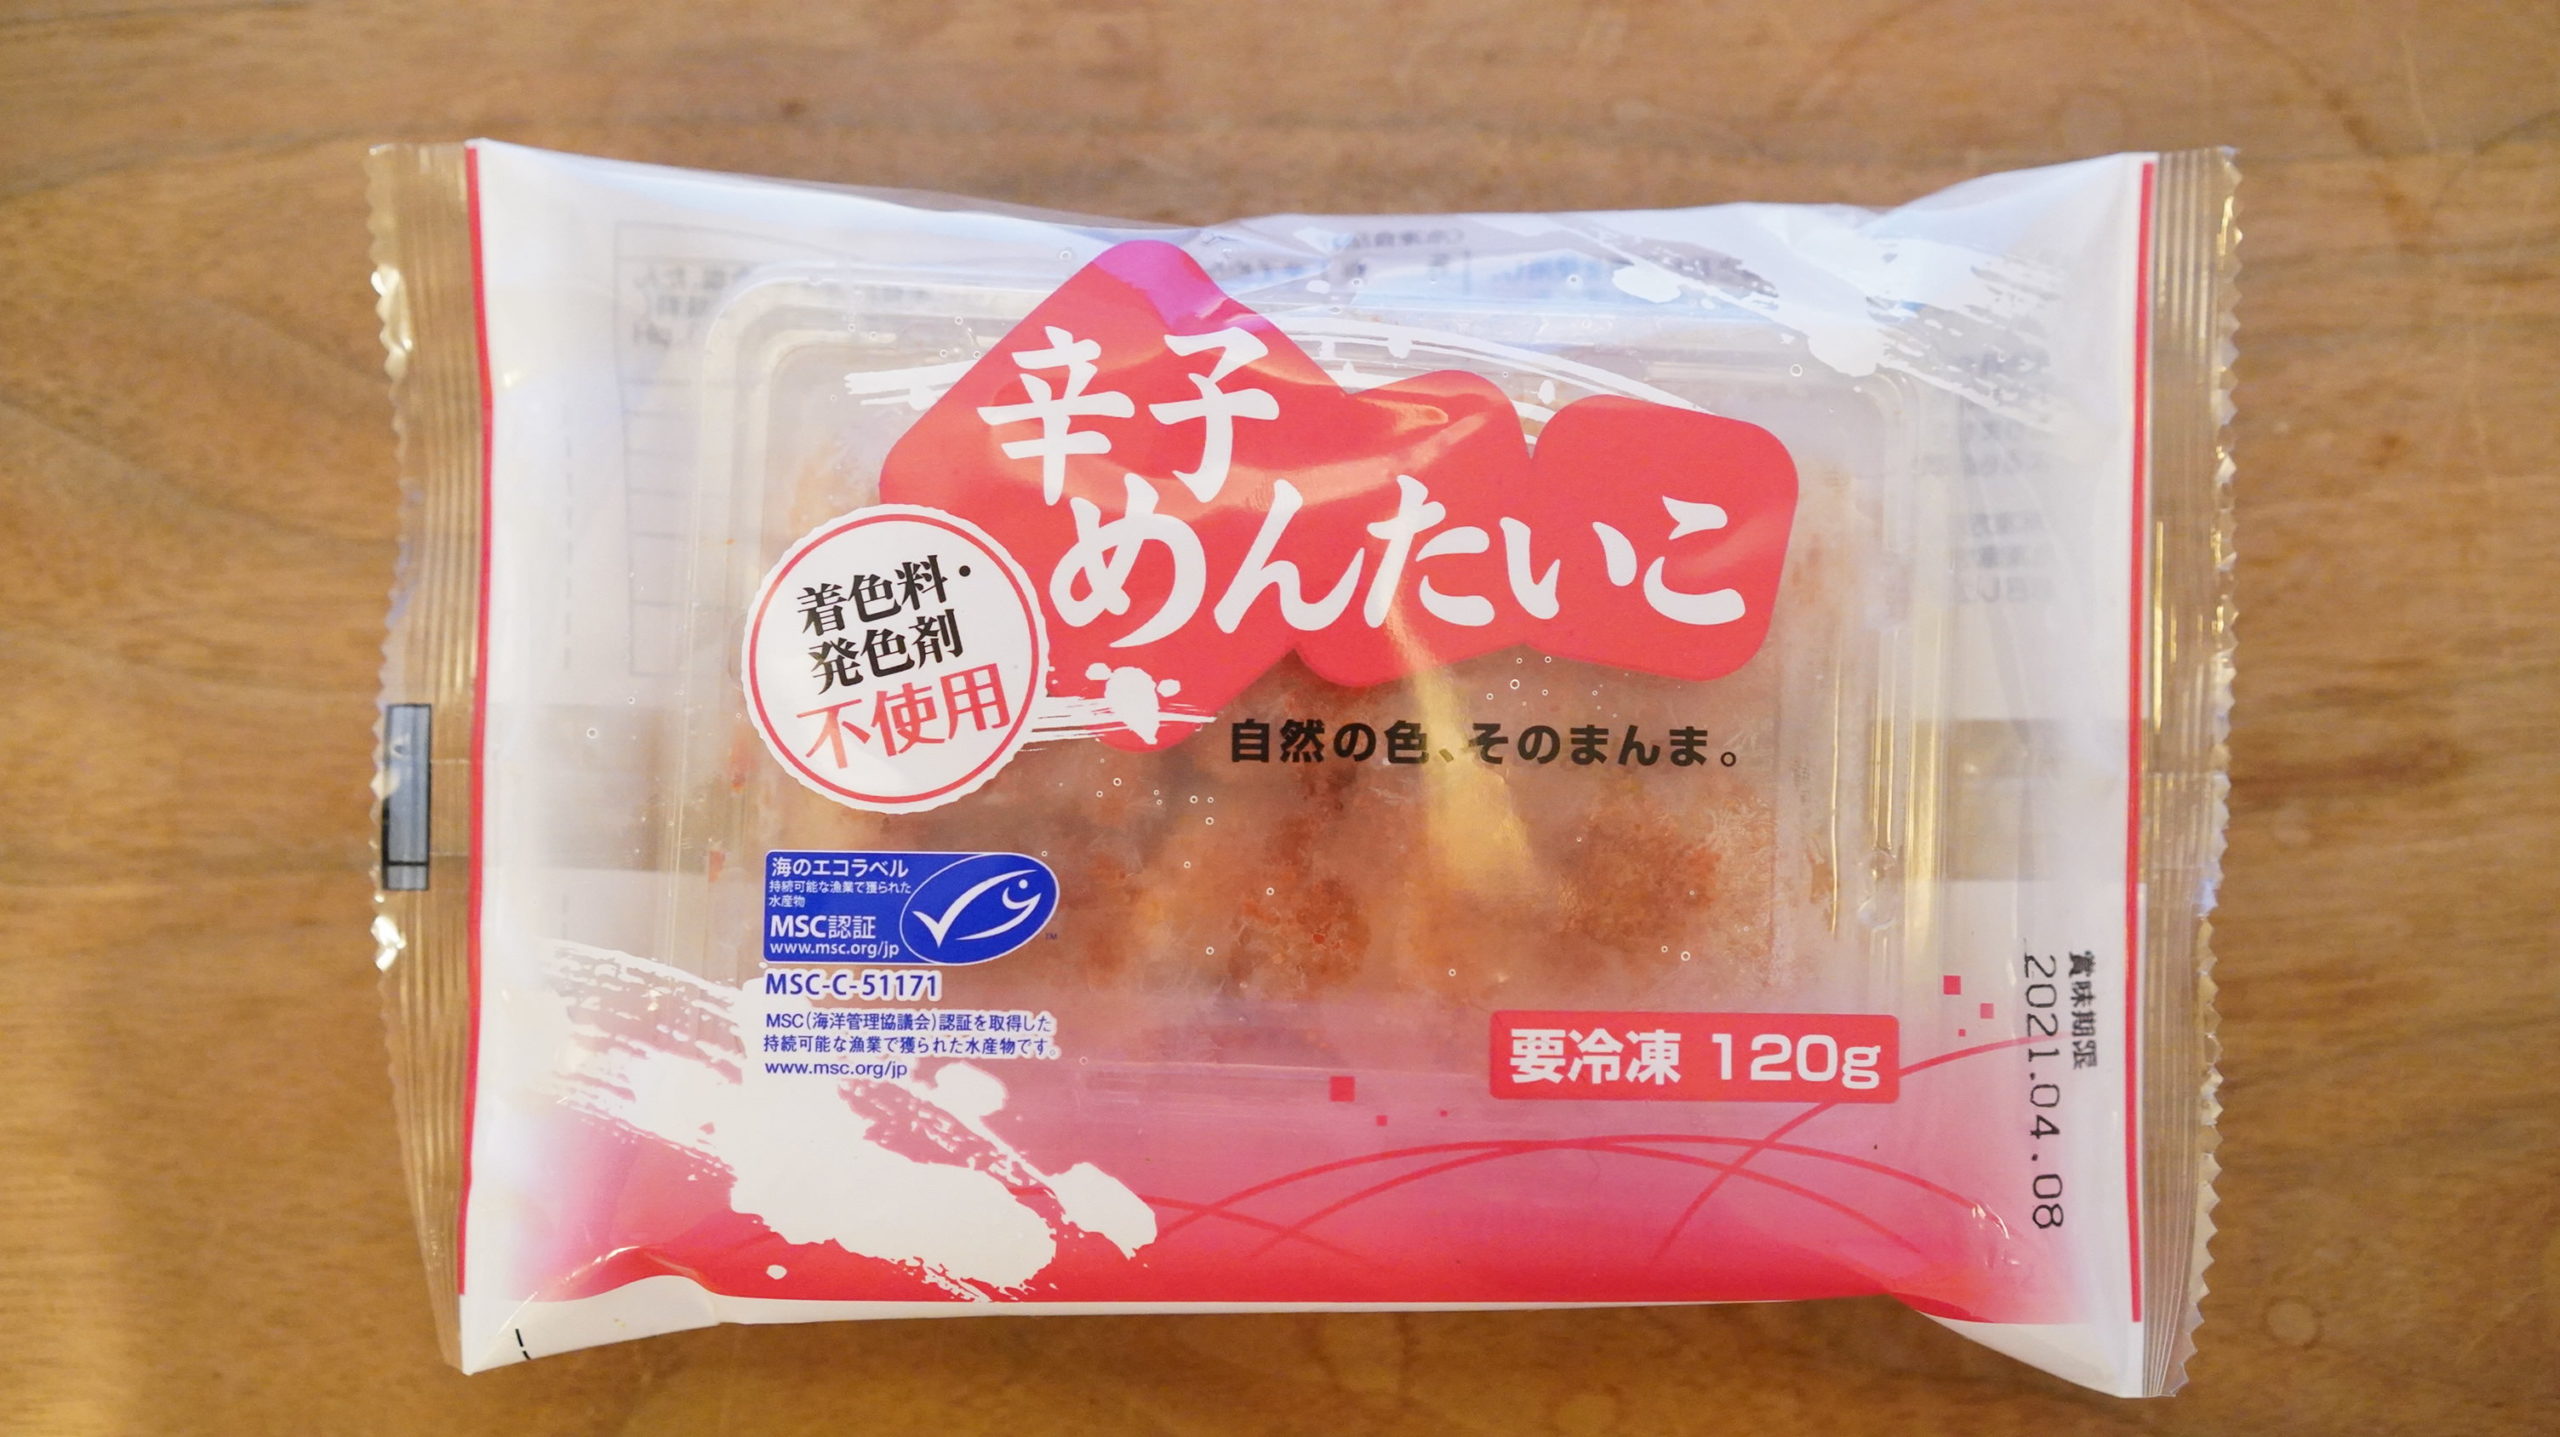 生協coop宅配の冷凍食品「辛子めんたいこ」のパッケージ写真